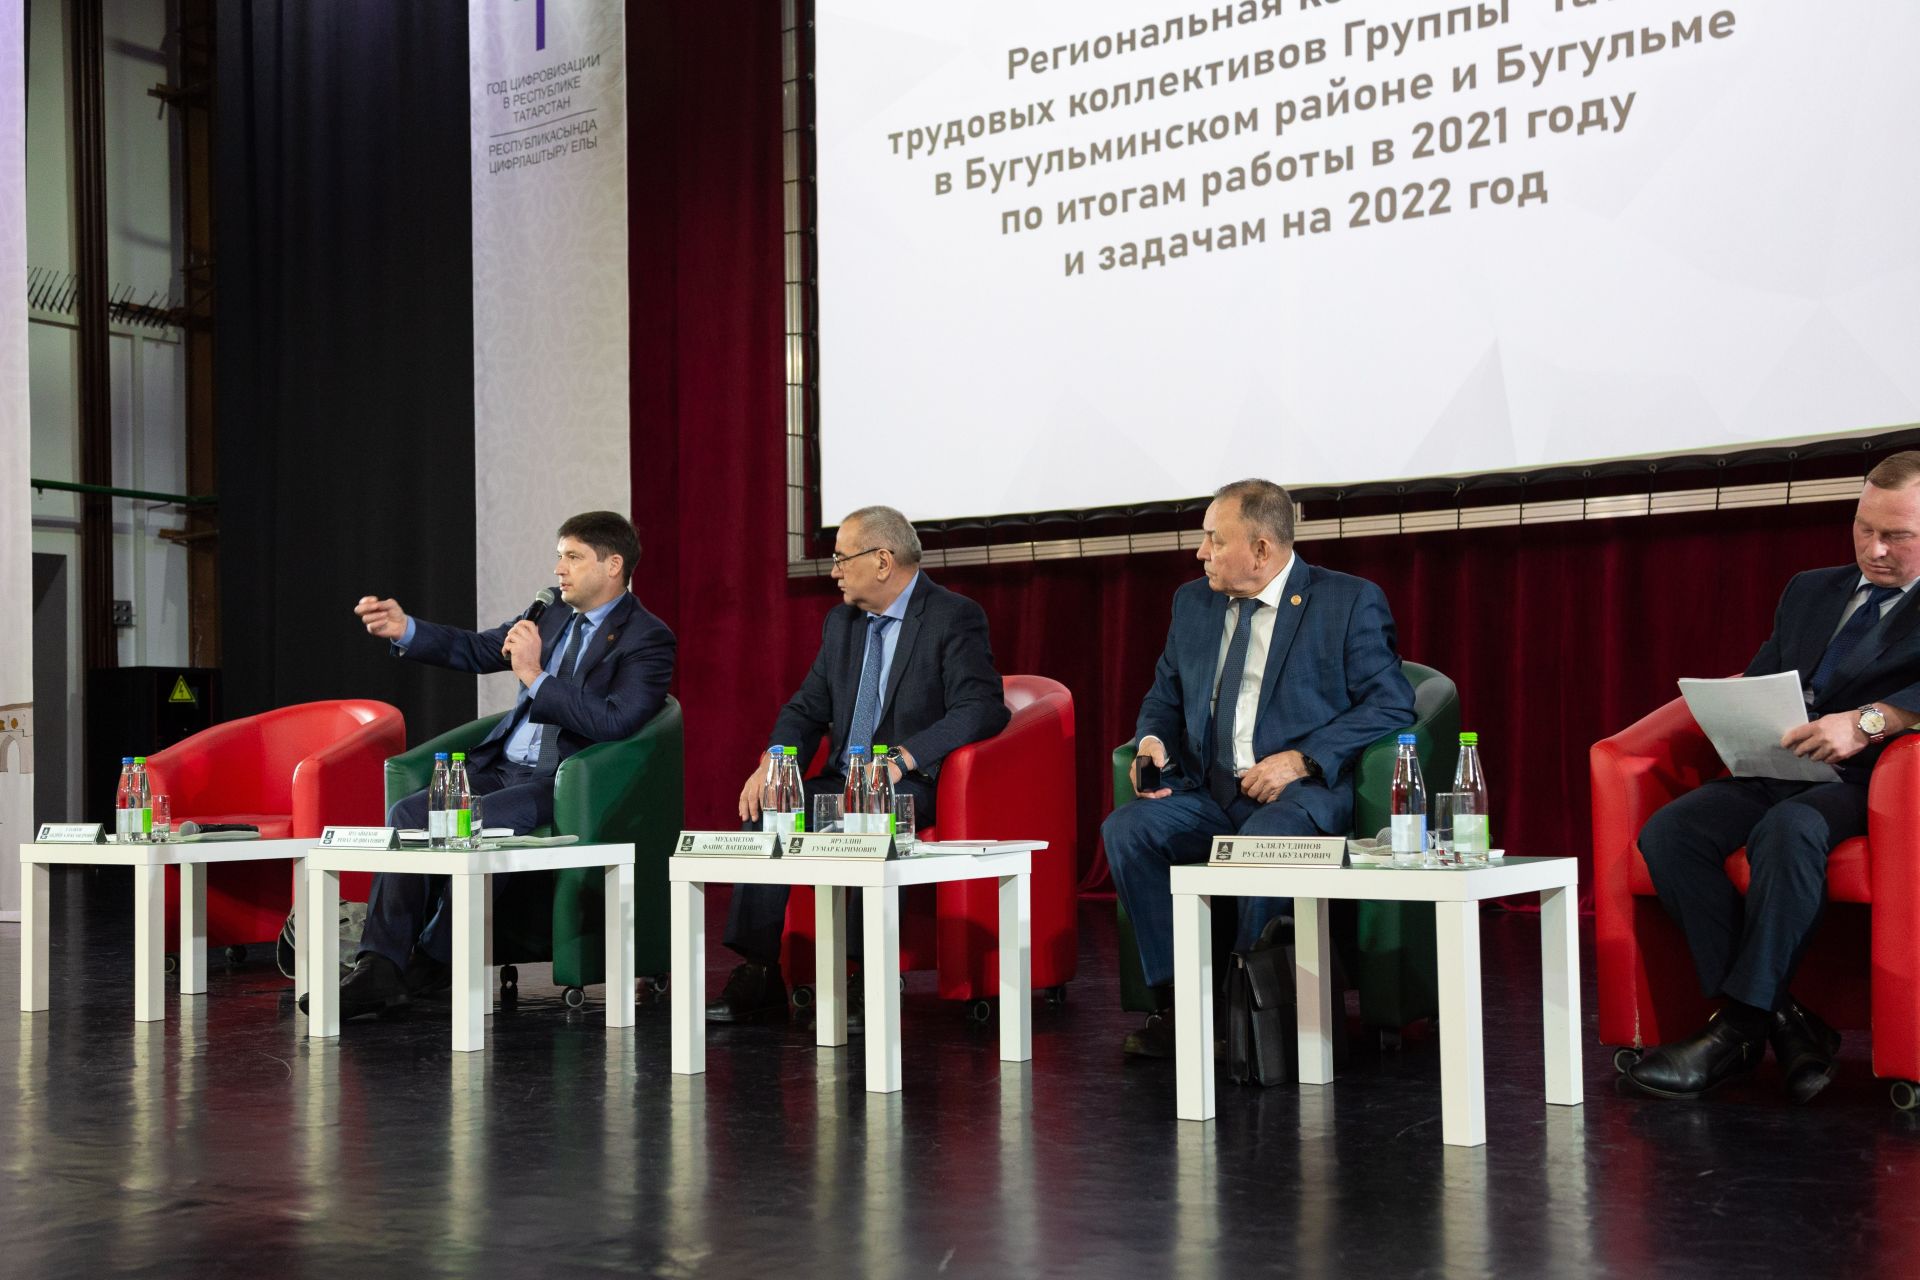 Коллективы предприятий «Татнефти» Бугульминского района подвели итоги работы за 2021 год